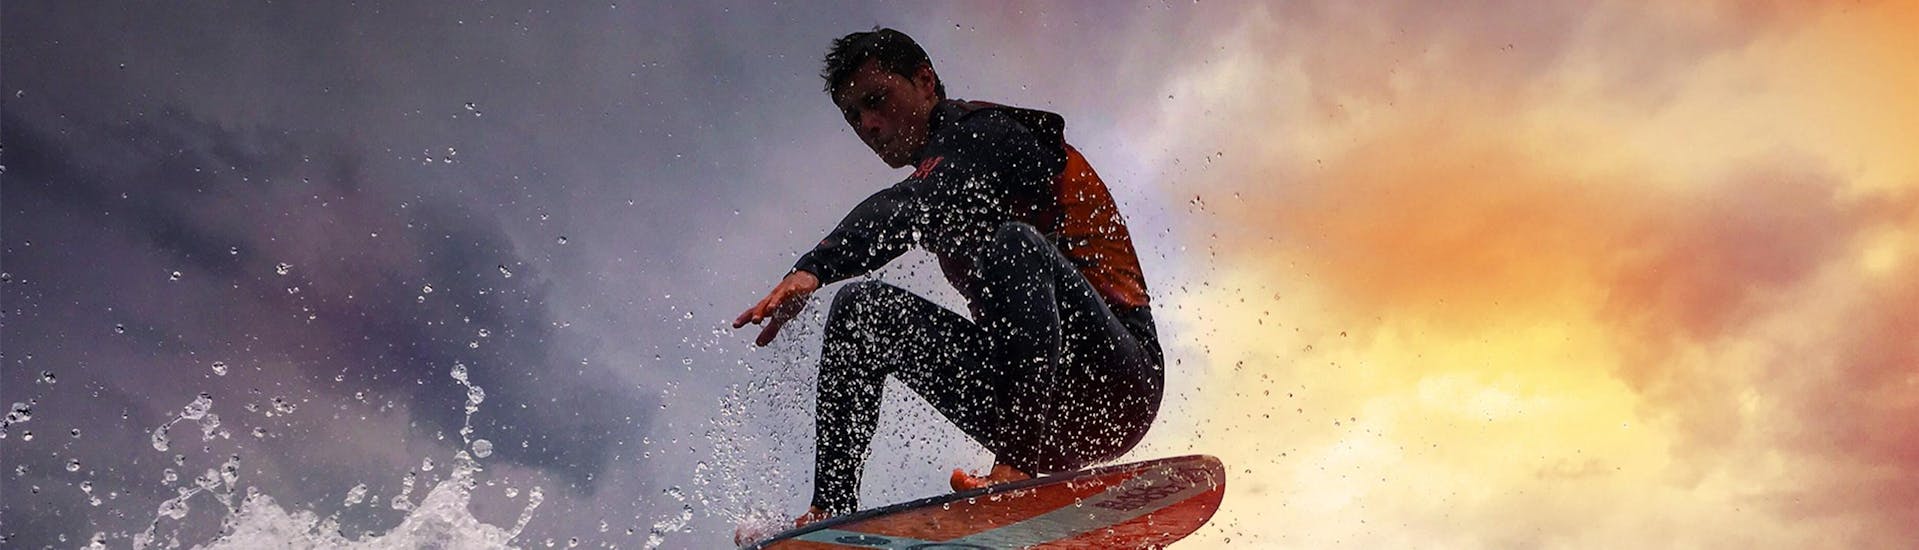 Un homme surfe sur une vague grâce à Le Spot qui proposent des cours de ski nautique, des cours de wakesurf et des cours de wakeboard sur le lac d'Annecy.